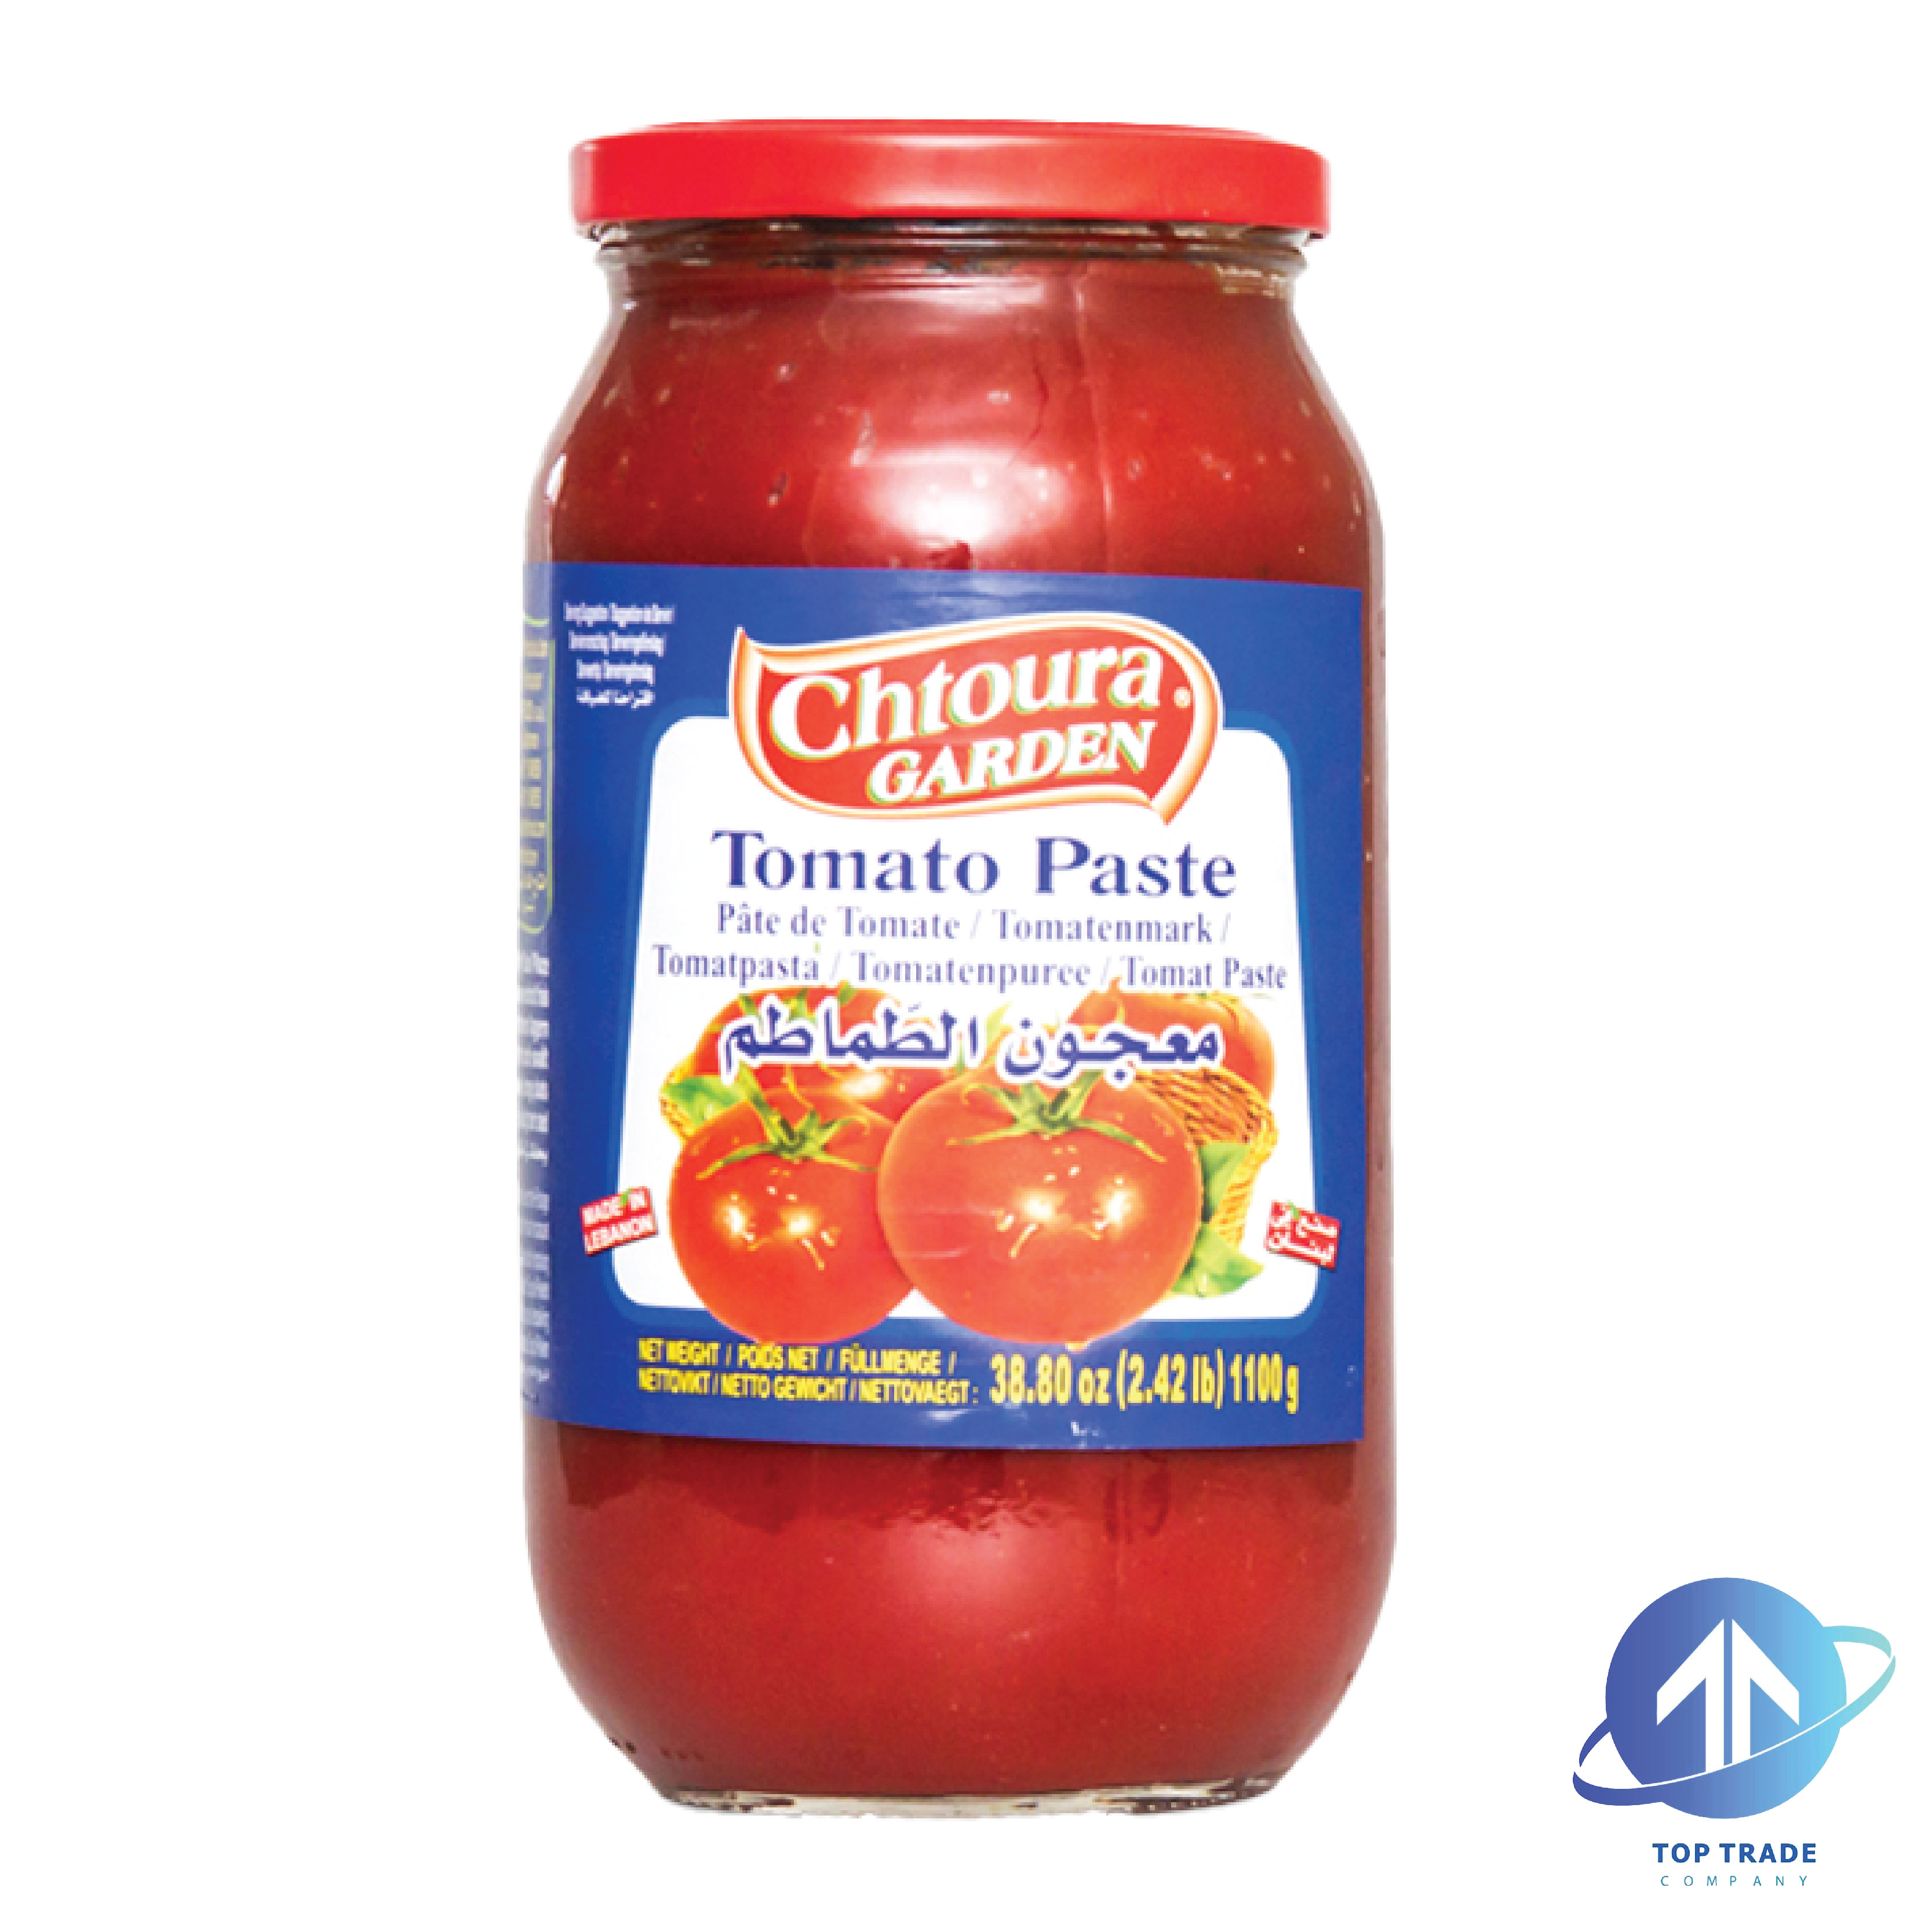 Chtoura Garden tomato paste 1100gr (Glass)